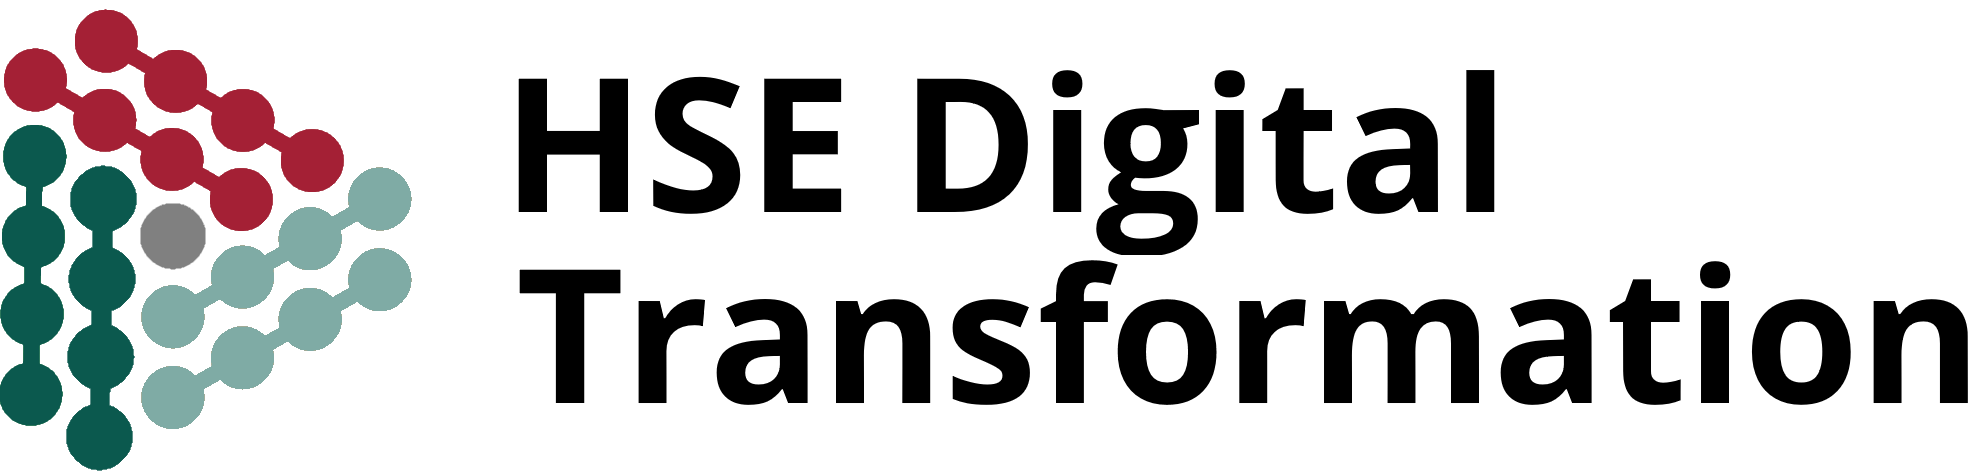 HSE Digital Transformation Logo v23